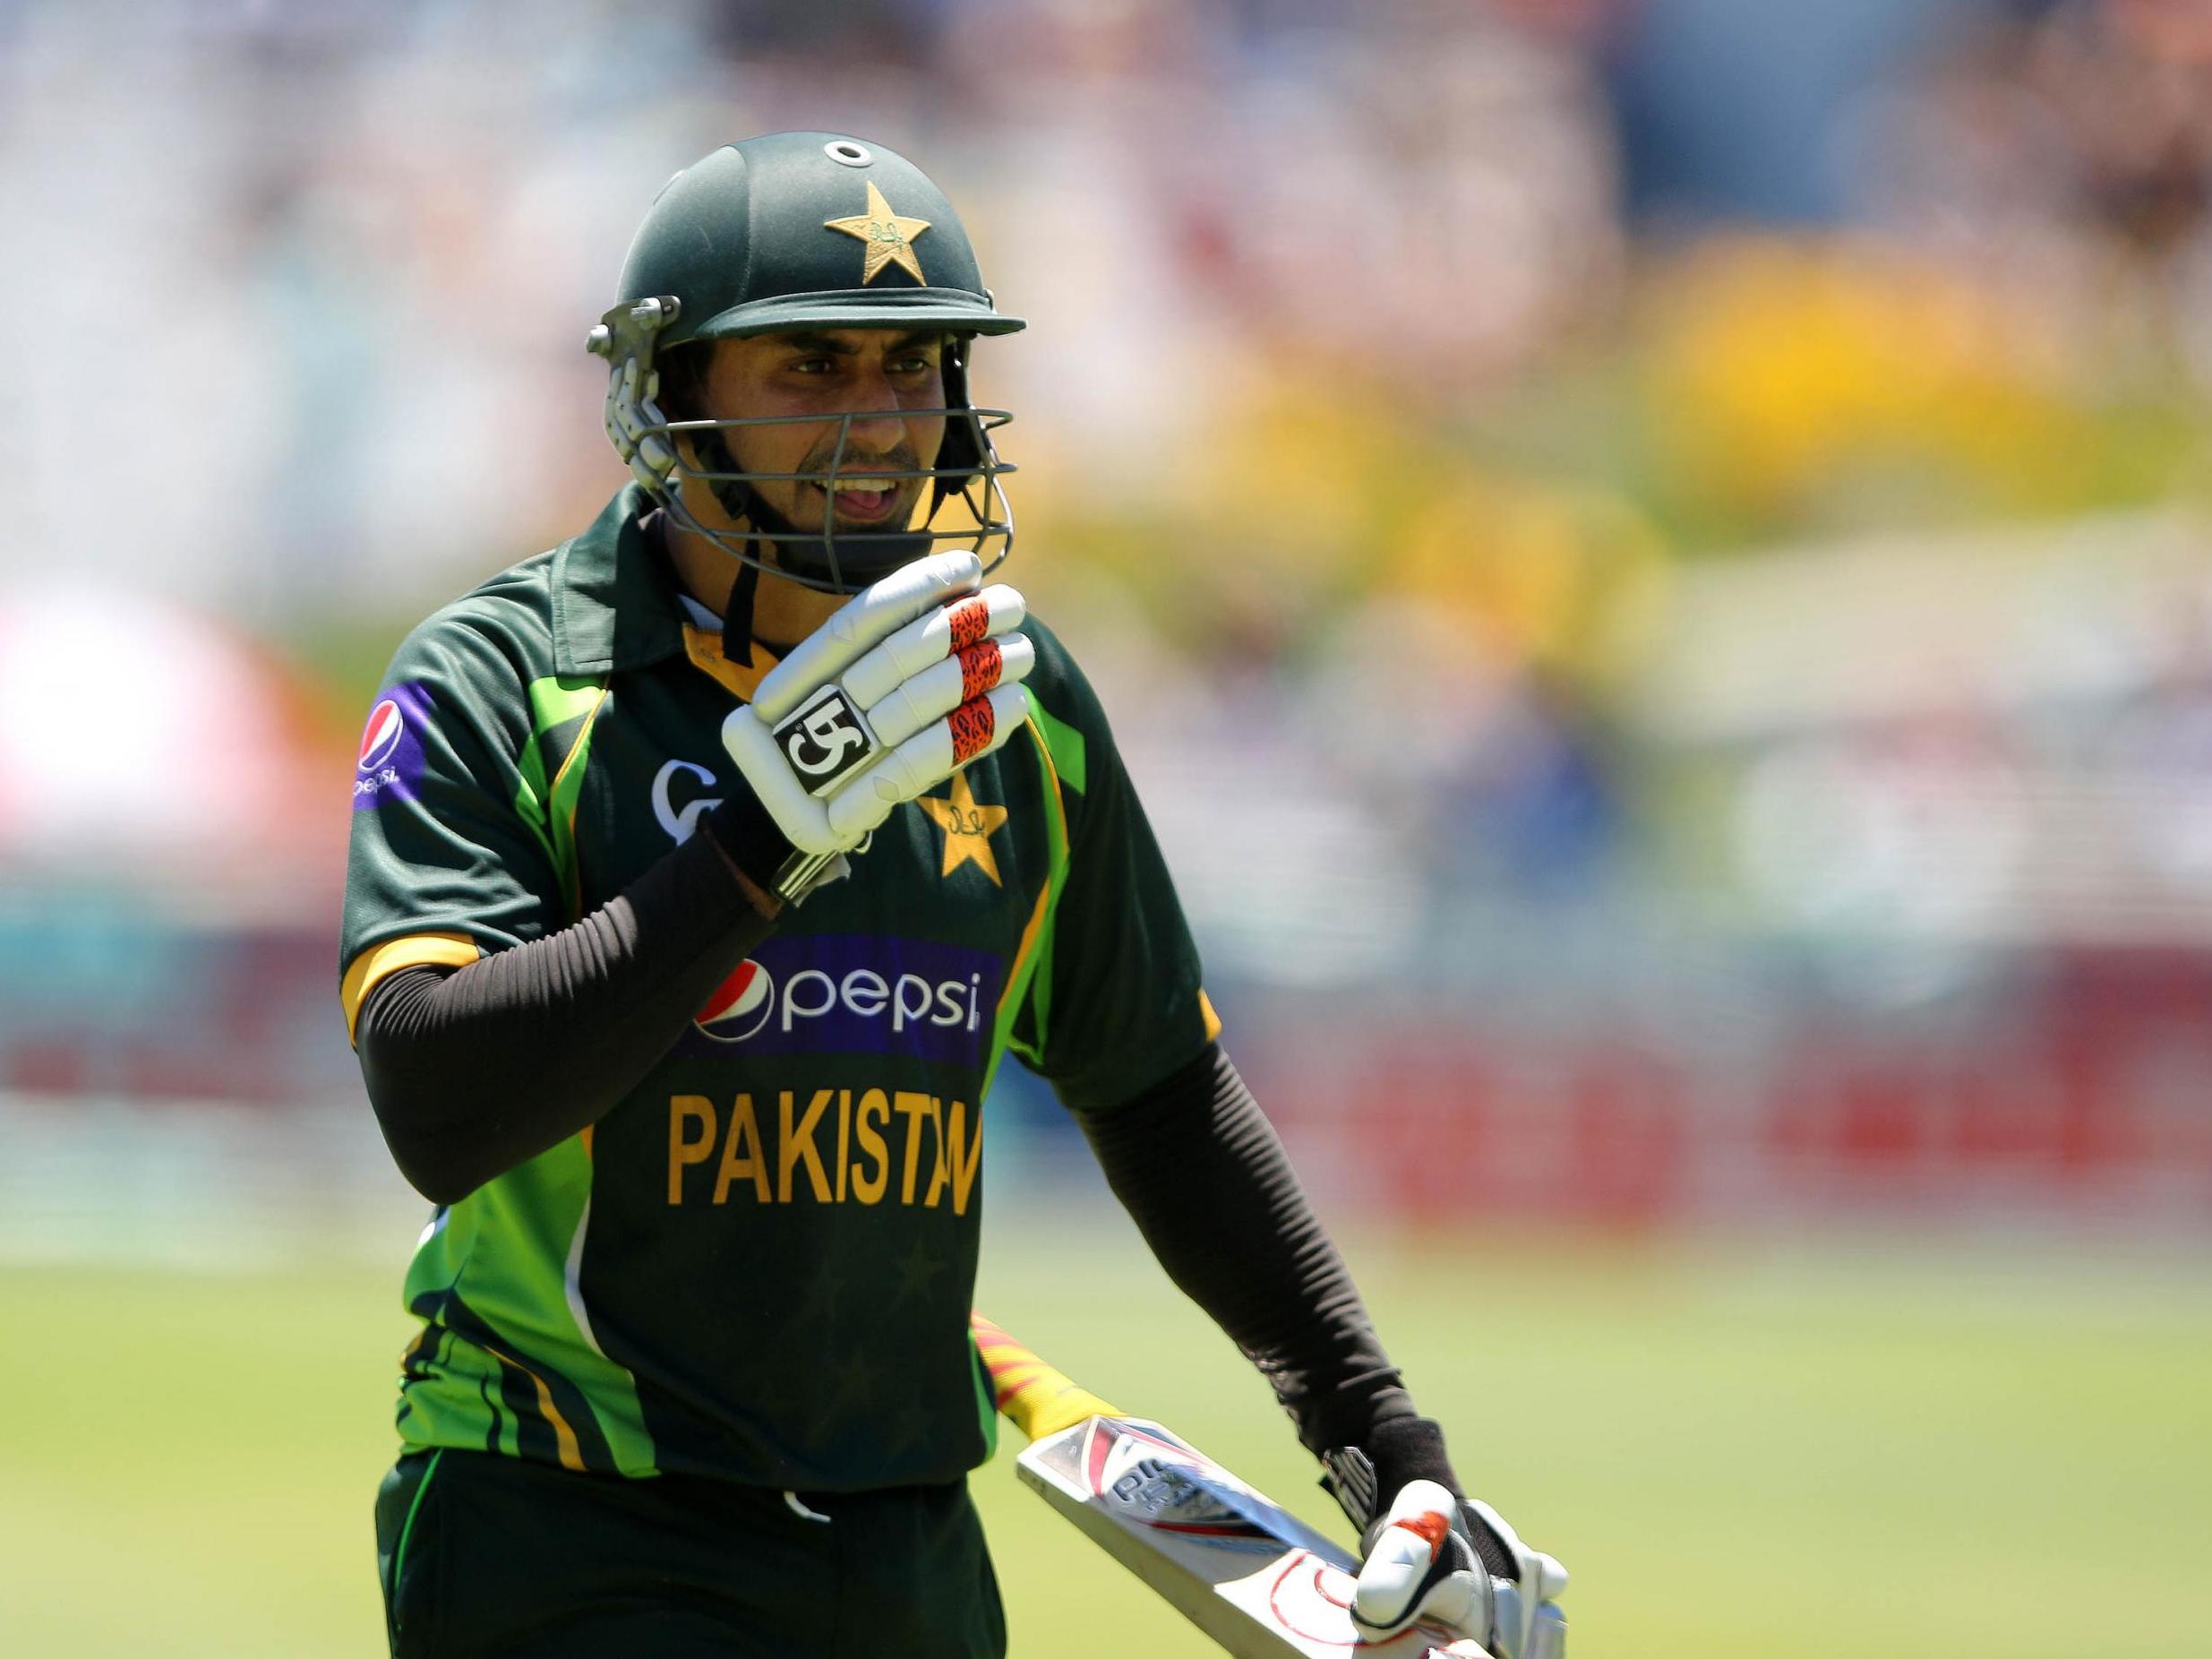 Nasir Jamshed during his playing days for Pakistan